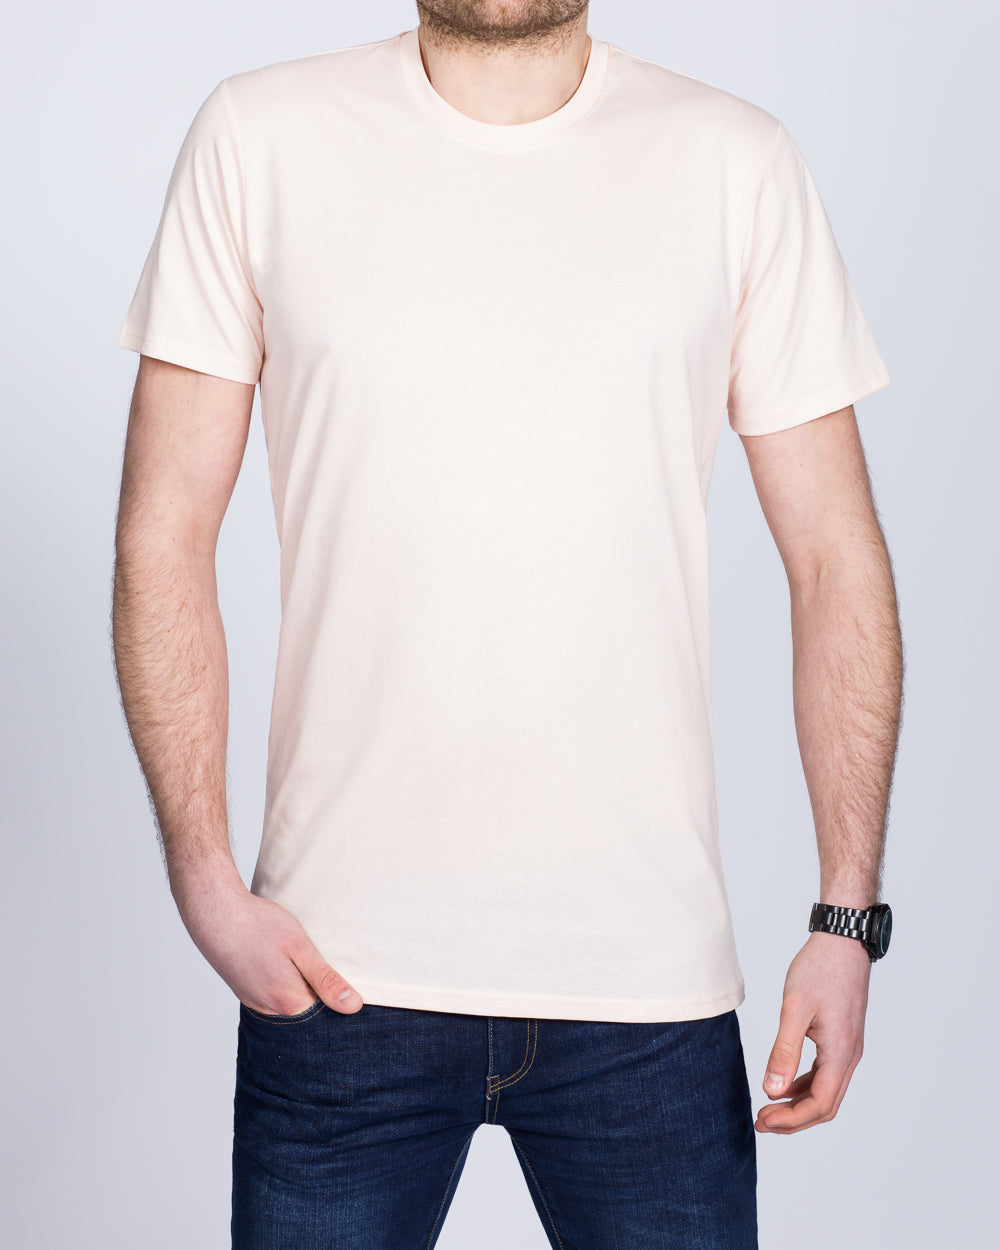 Girav Sydney Extra Tall T-Shirt (light rose)